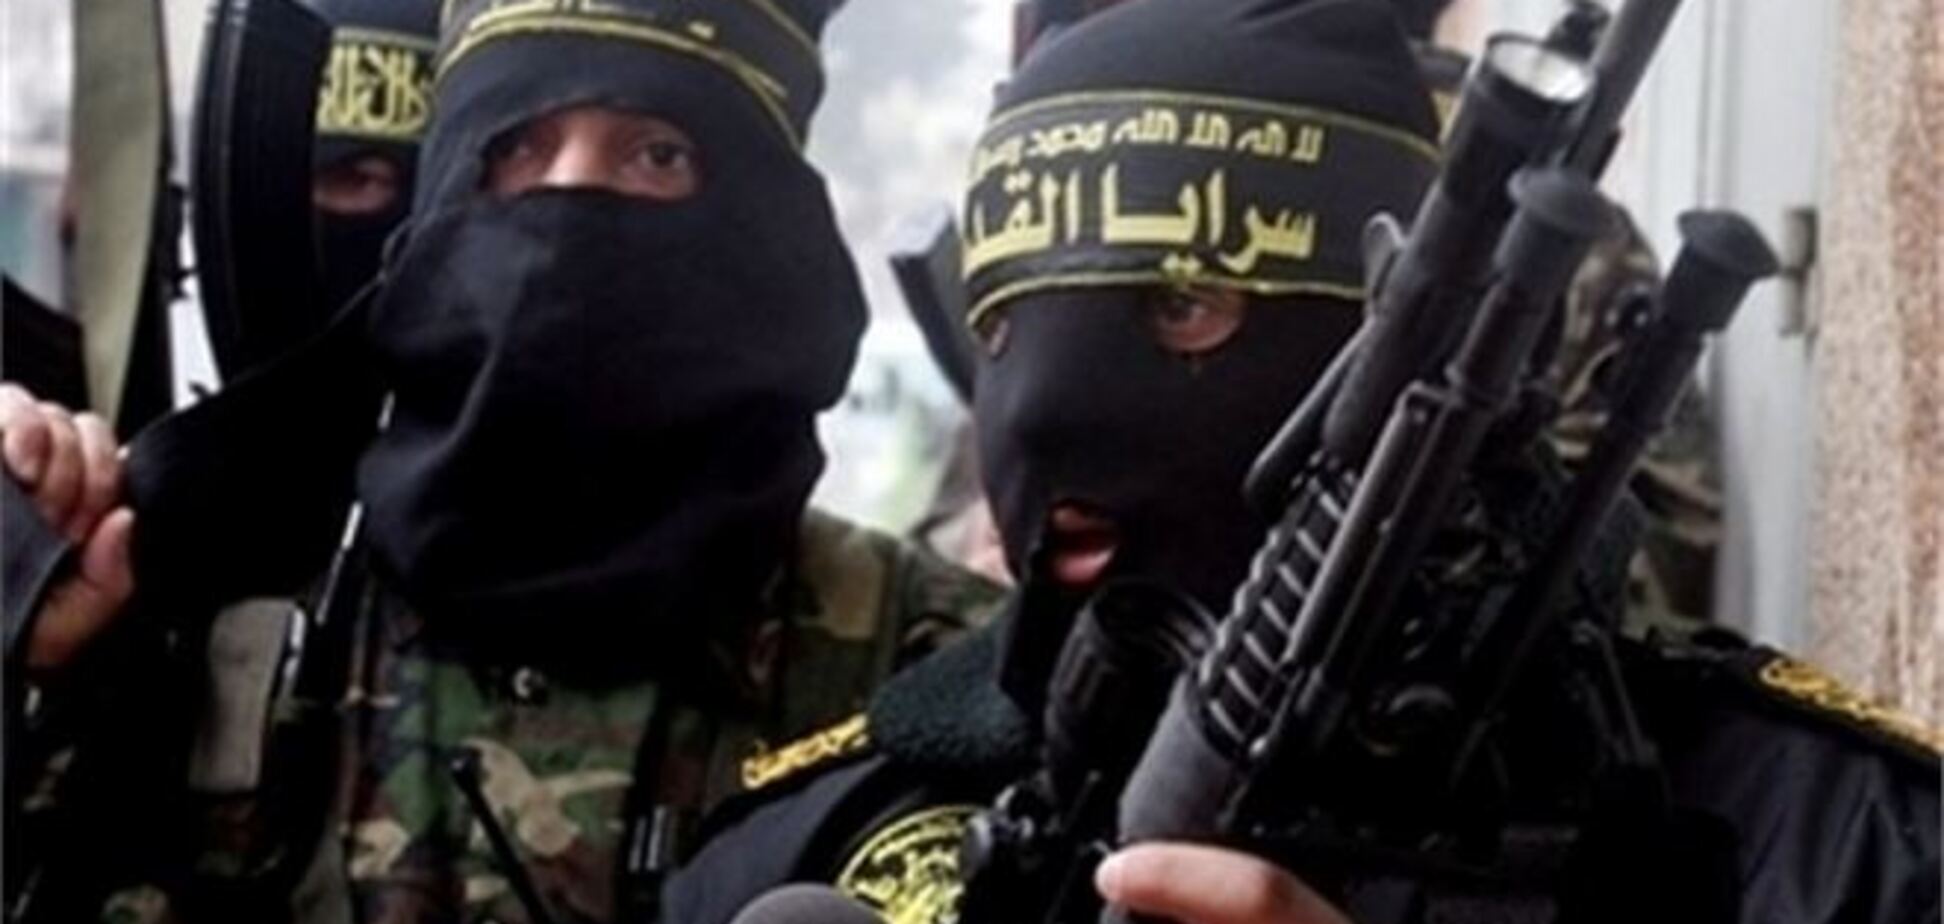 США предупреждают туристов о возможных терактах 'Аль-Каиды'